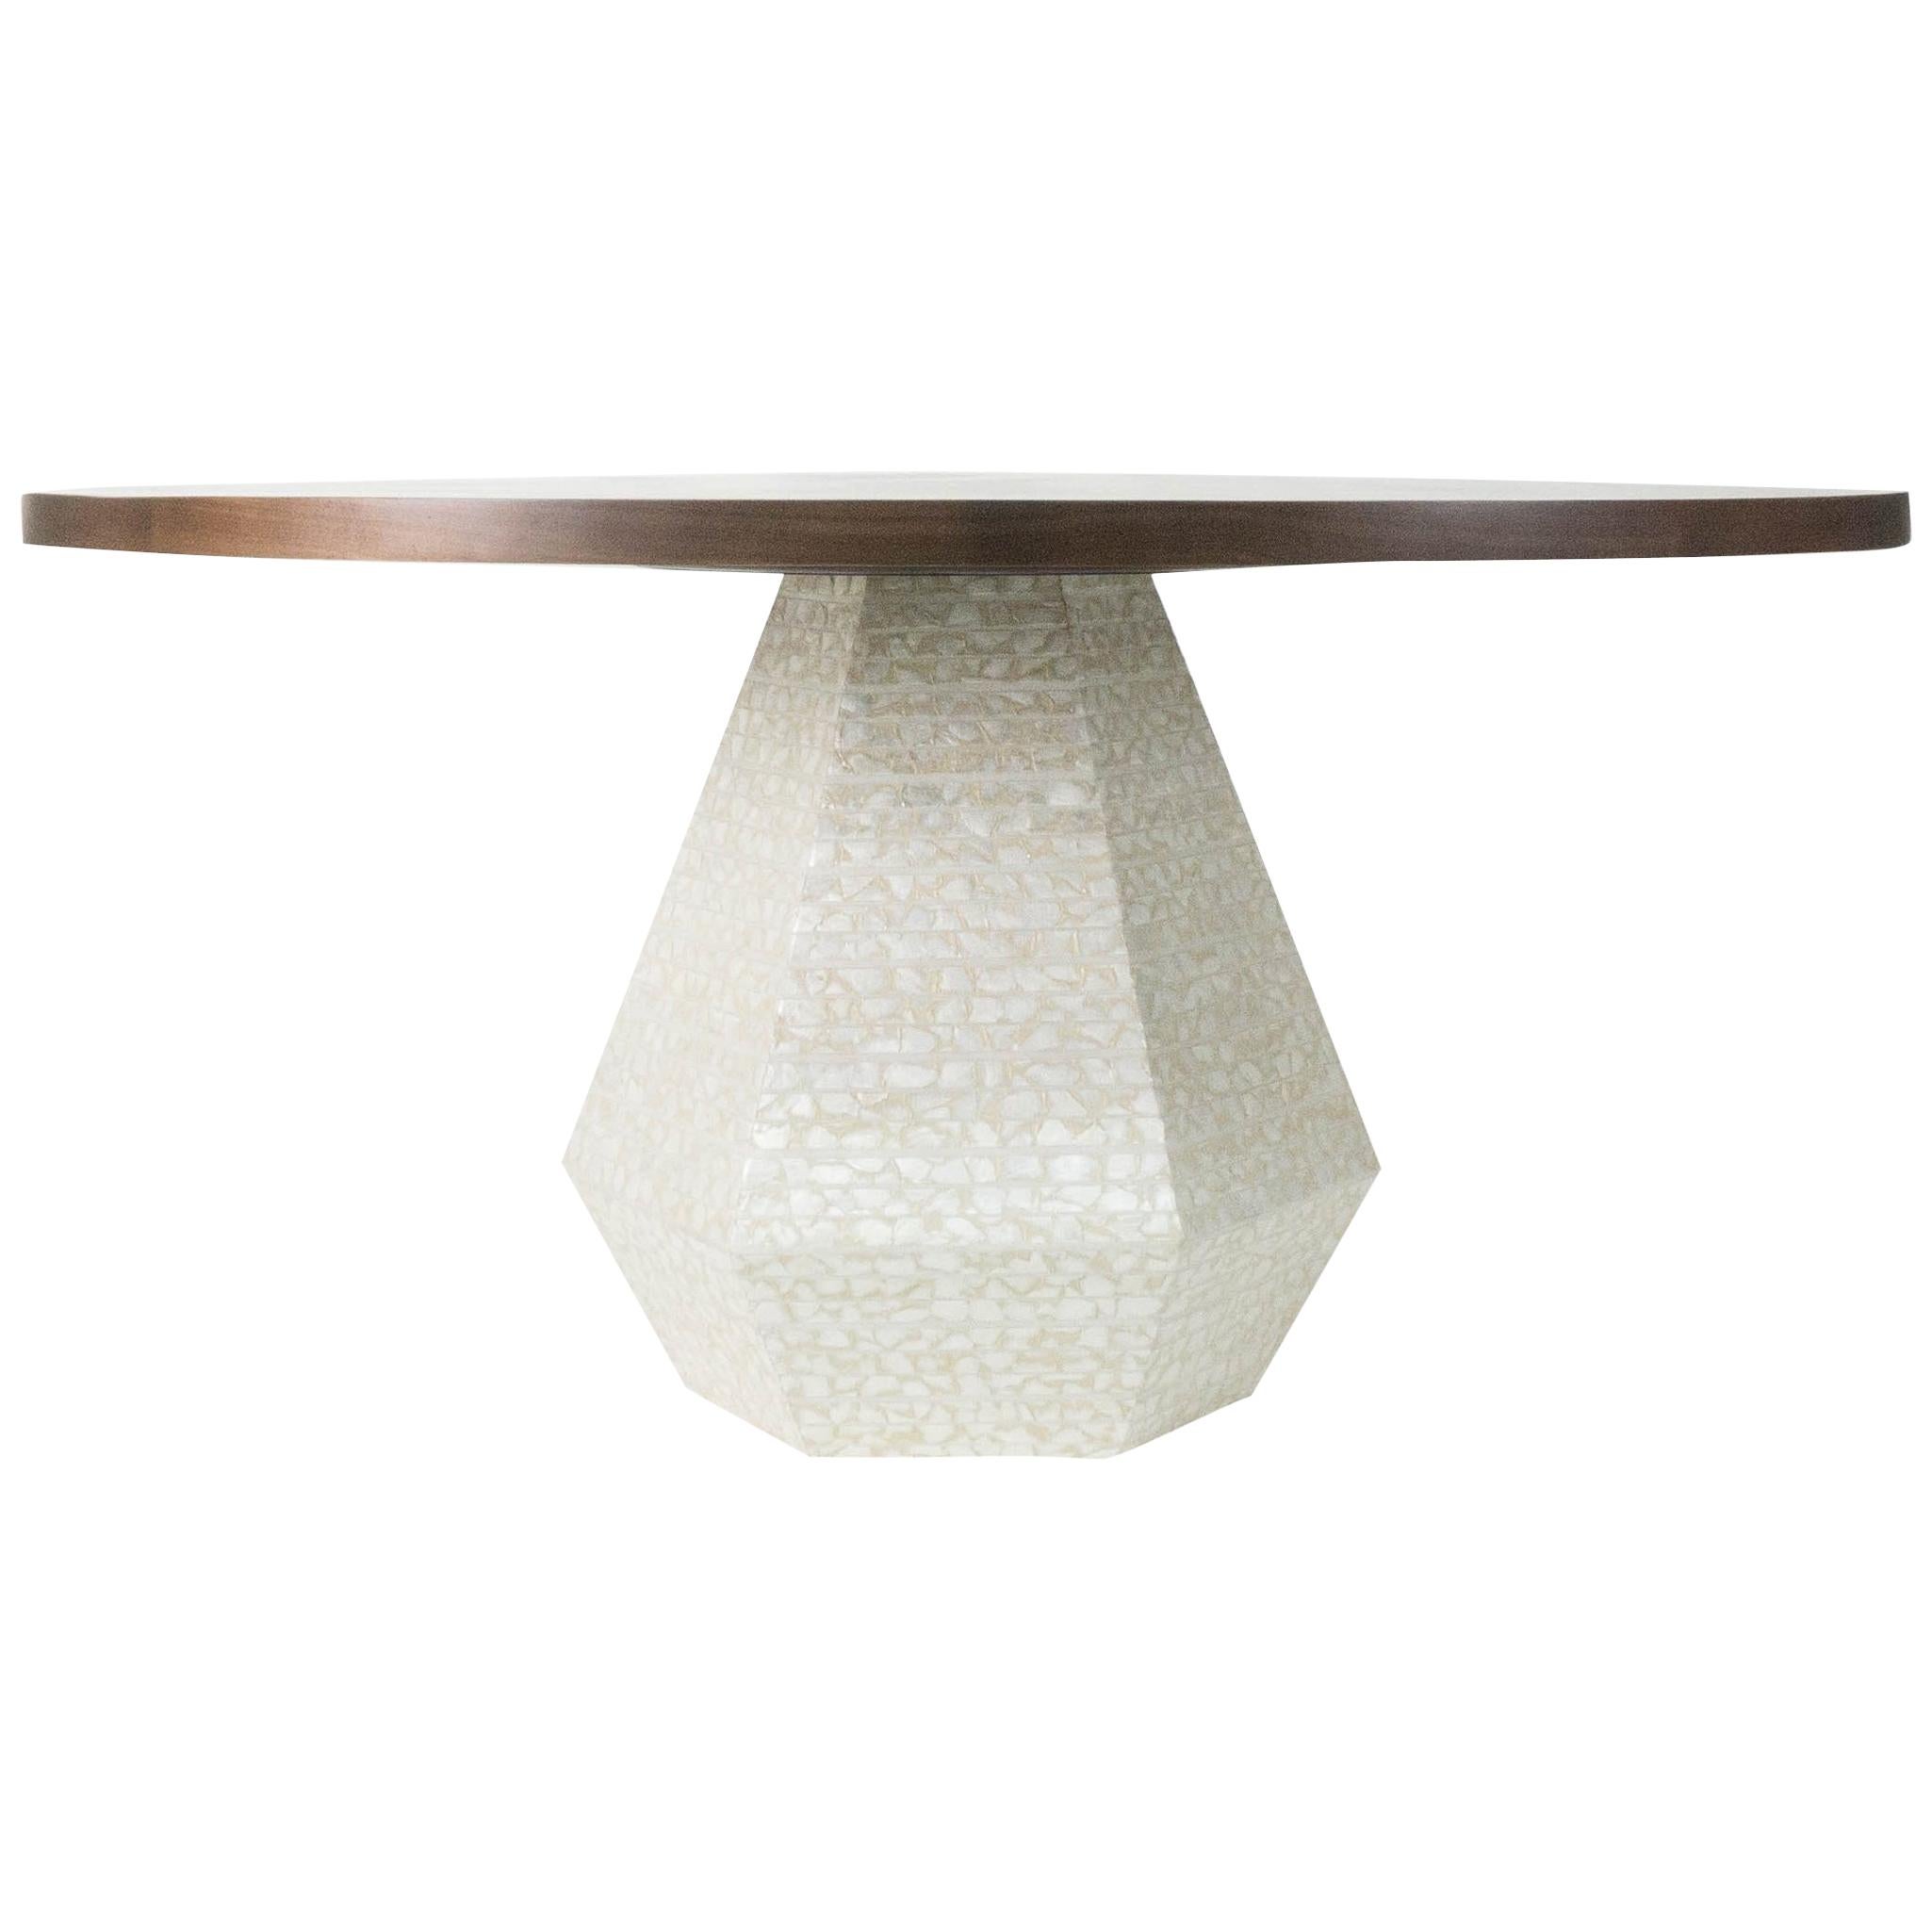 Unser Pilztisch ist ein moderner runder Esstisch mit einer satinierten Walnussplatte. Die einzigartig geformte Basis ist mit echten Capiz-Muscheln bedeckt, die wegen ihres durchscheinenden Aussehens oft als 